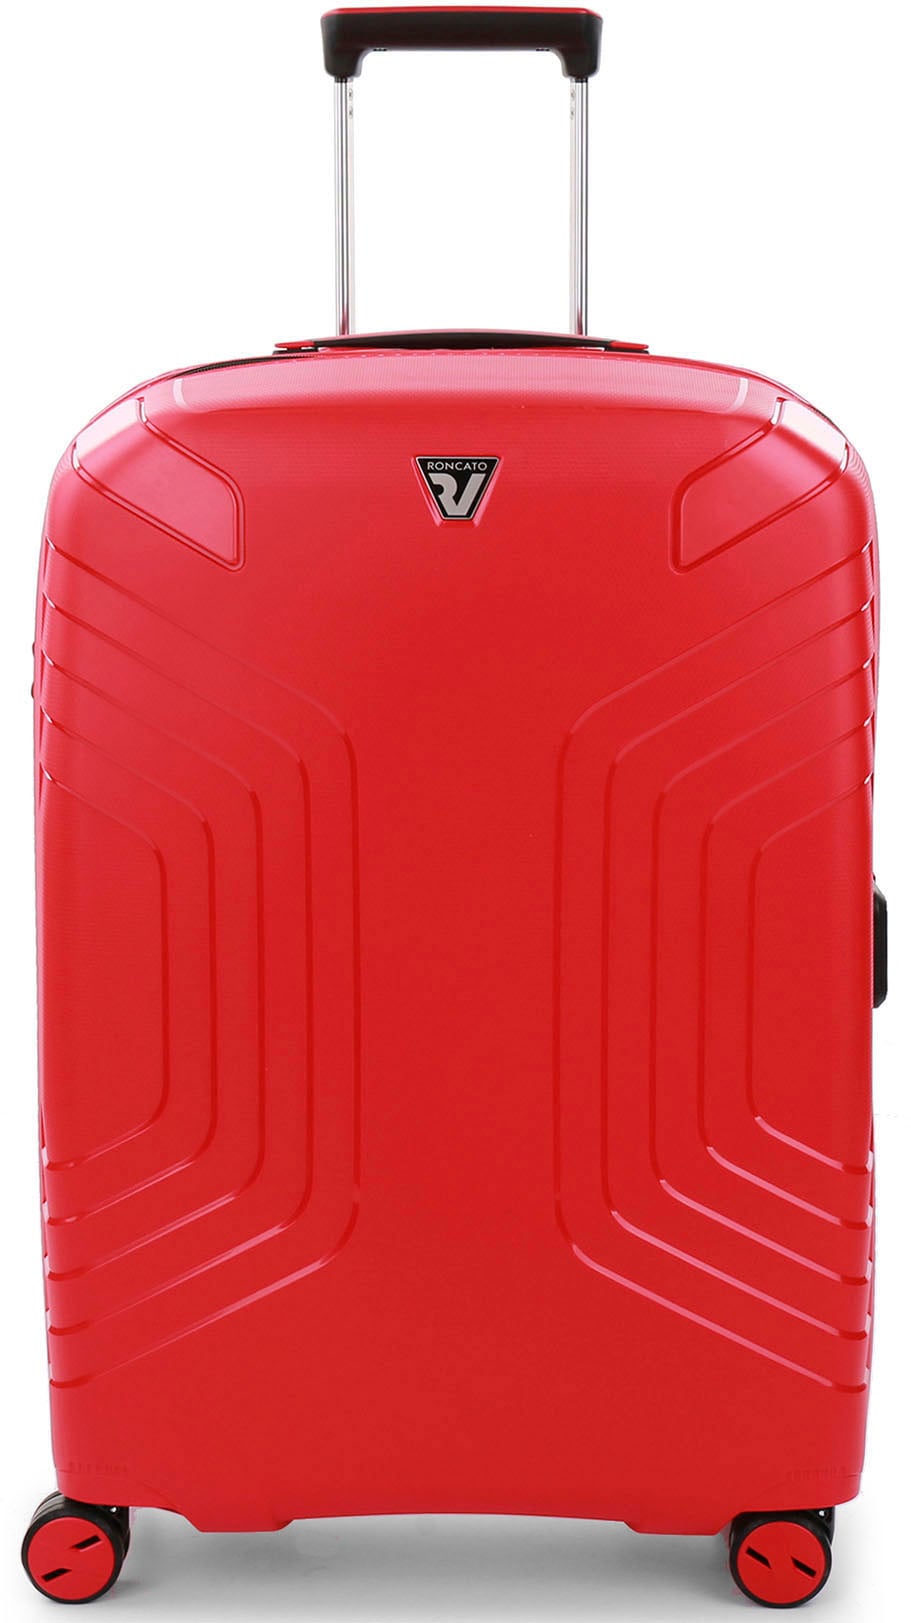 RONCATO Hartschalen-Trolley »Ypsilon 4.0, 69 cm, rot«, 4 Rollen, Hartschalen-Koffer Reisegepäck mit Volumenerweiterung und TSA Schloss